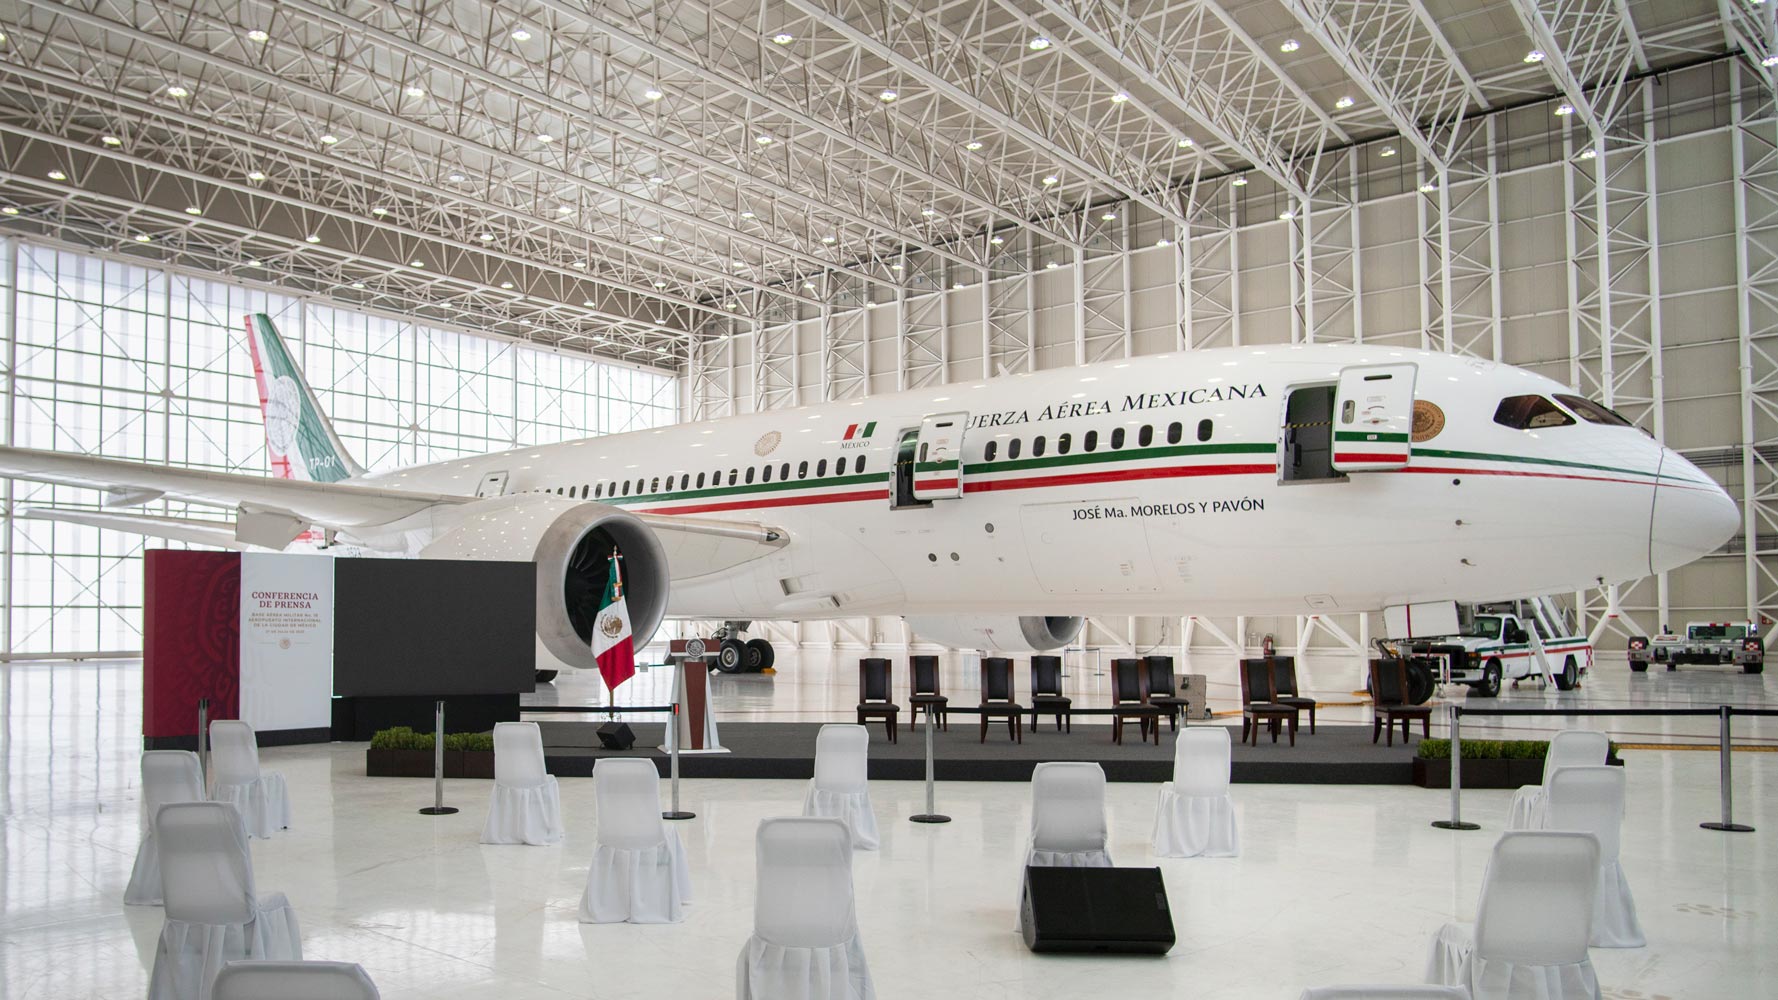 Mexico sells presidential plane to Tajikistan